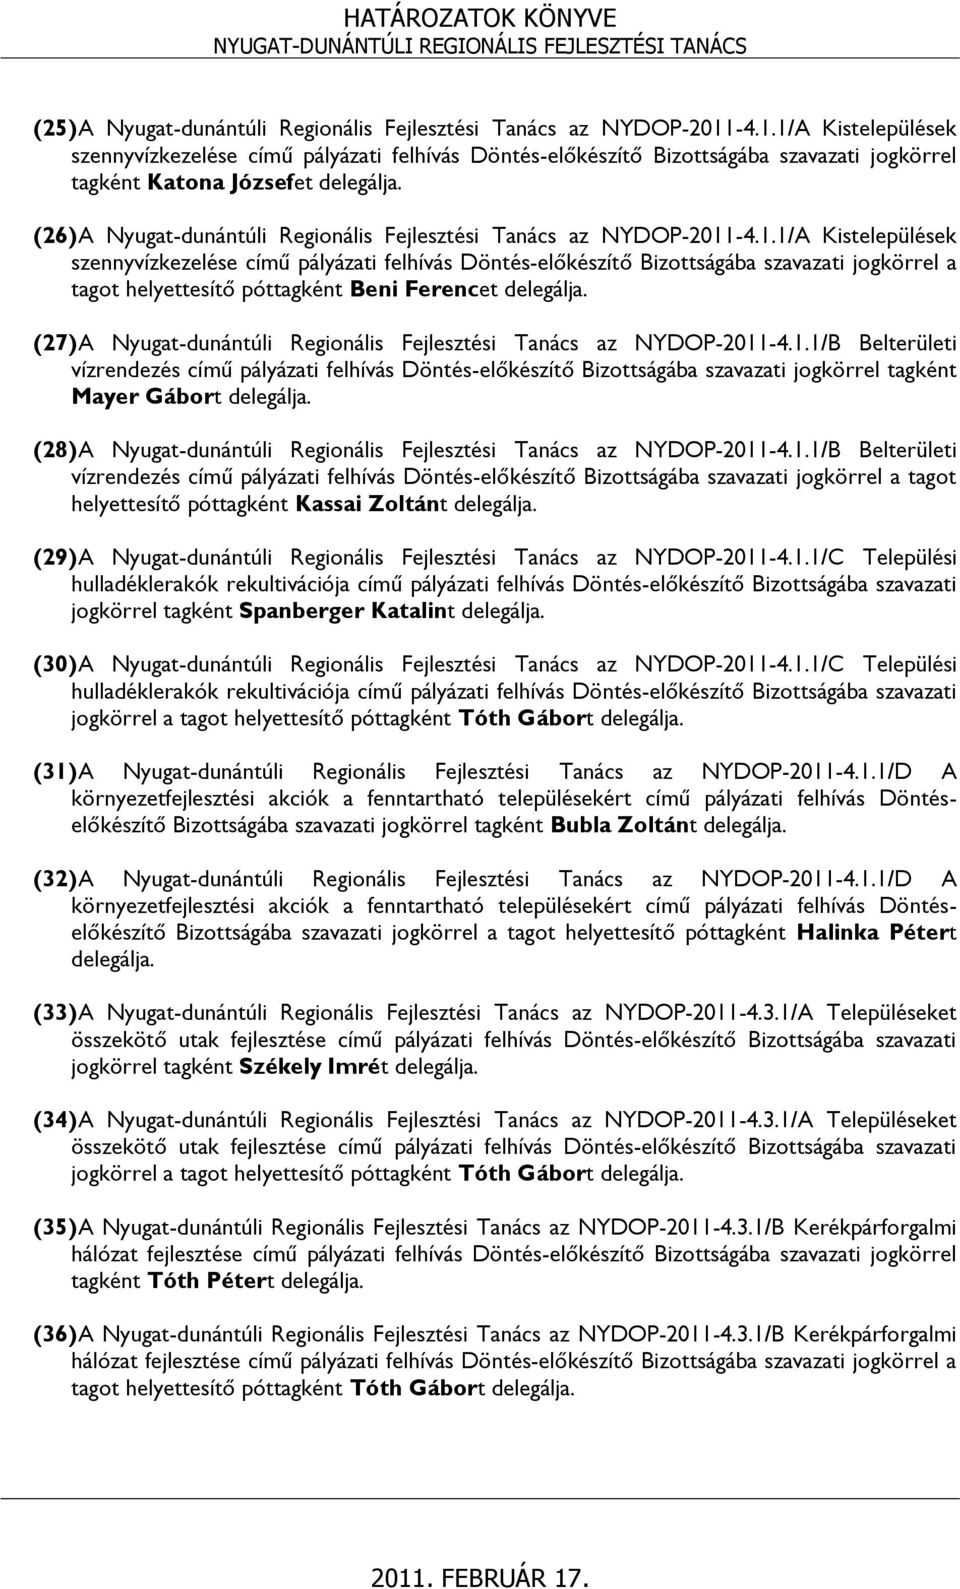 (26) A Nyugat-dunántúli Regionális Fejlesztési Tanács az NYDOP-2011